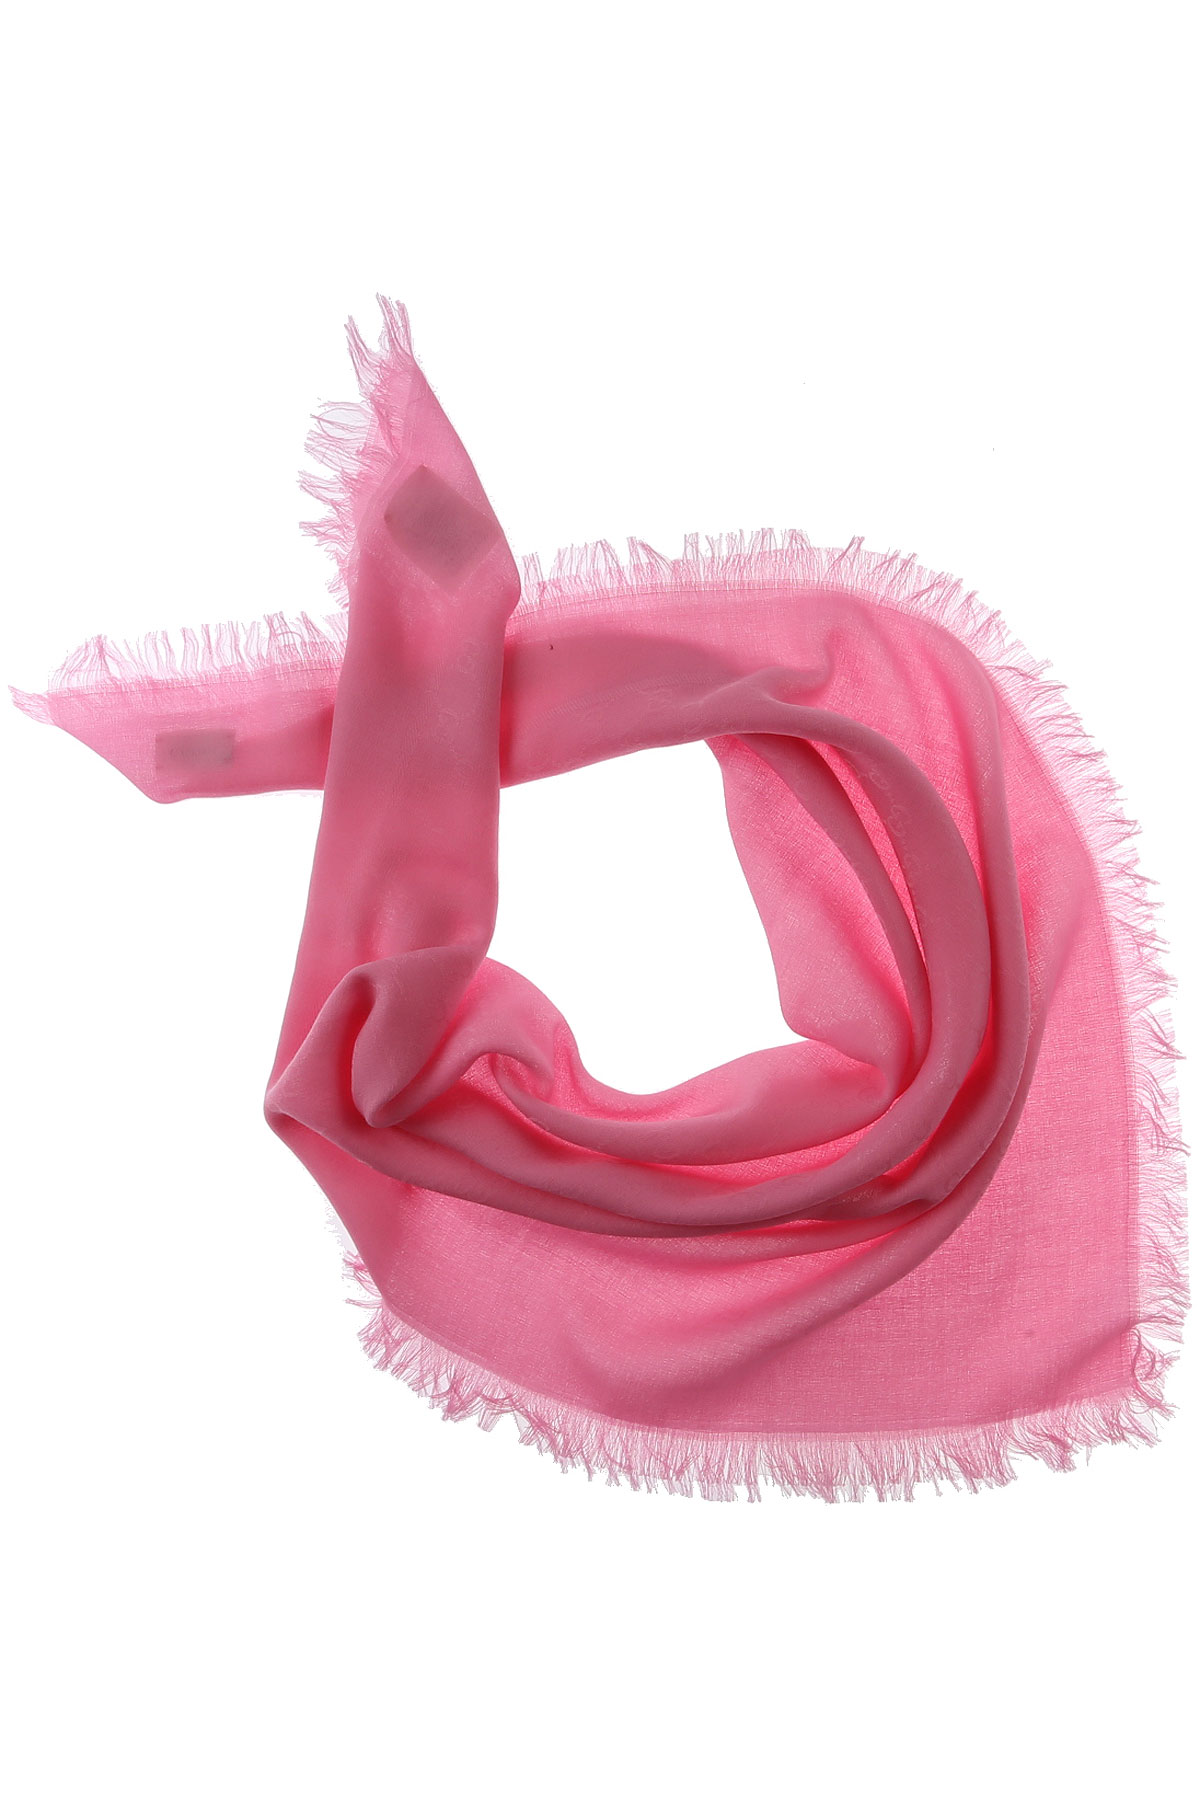 Gucci Kinder Schal für Mädchen Günstig im Sale, Pink, Baumwolle, 2017